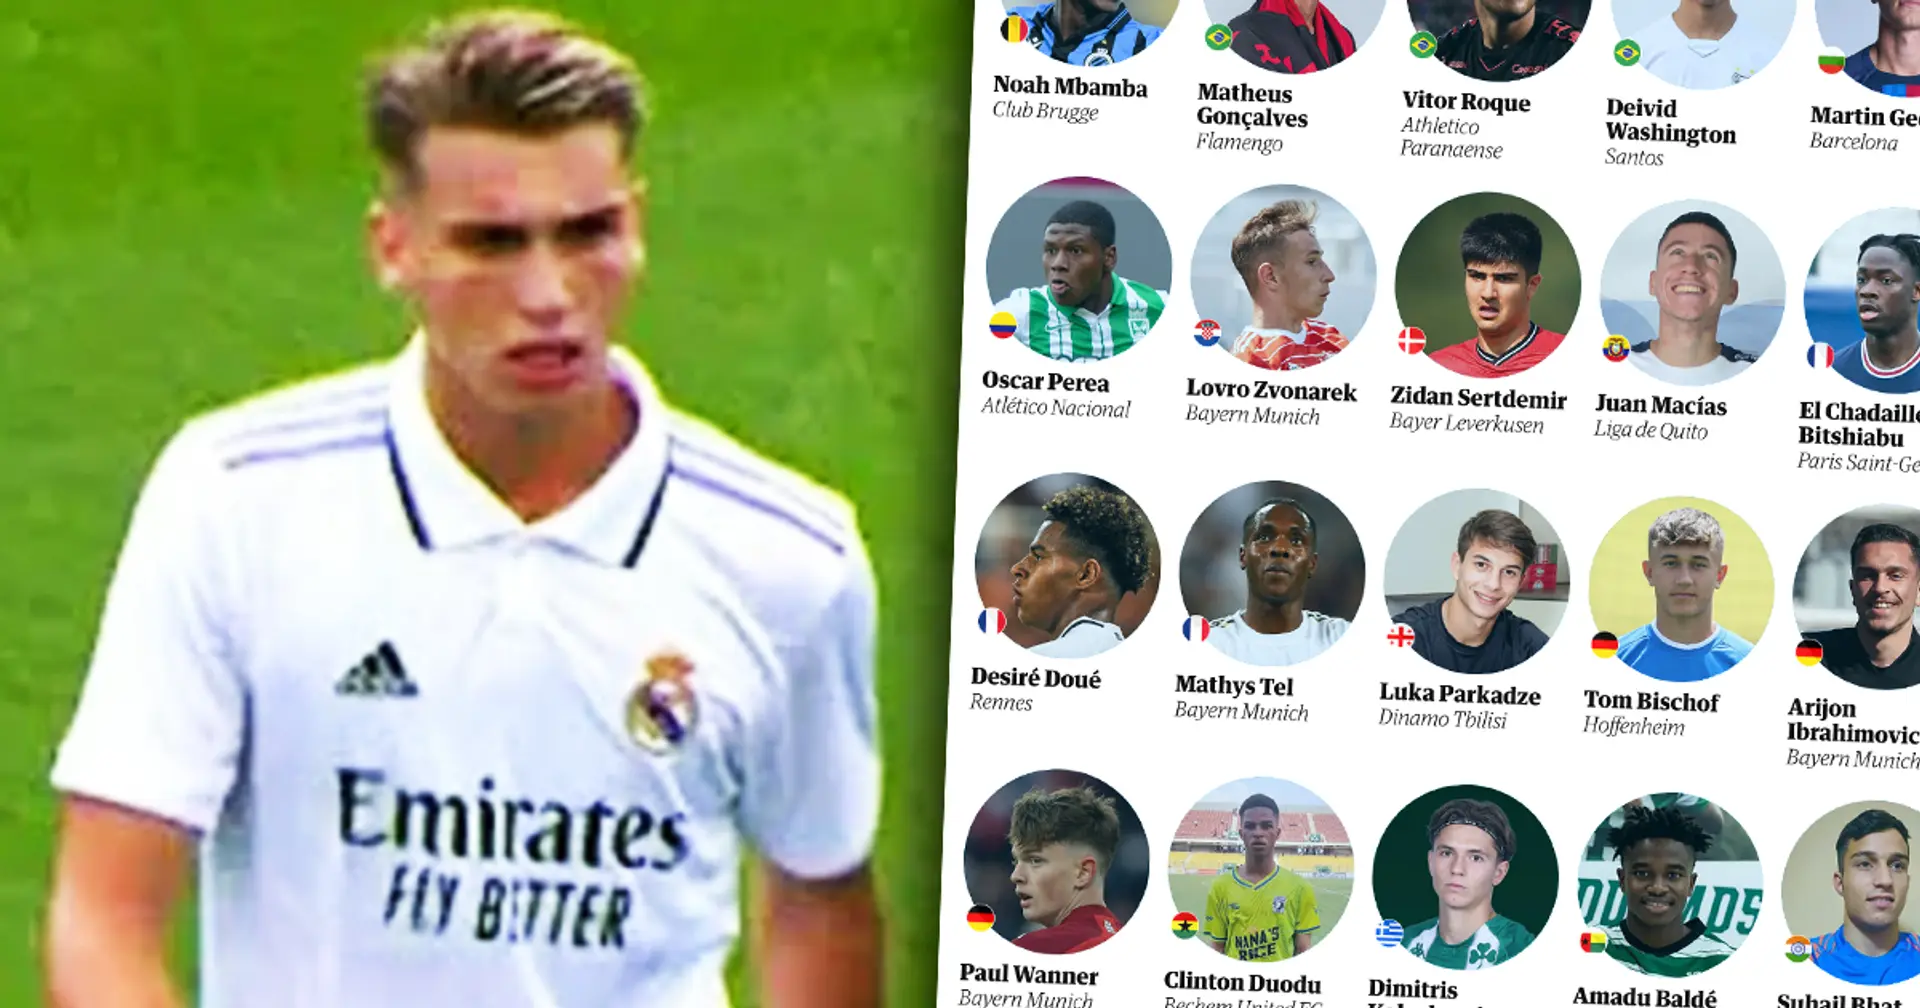 2 joueurs sous-radar du Real Madrid font partie de la liste des 60 meilleurs jeunes talents